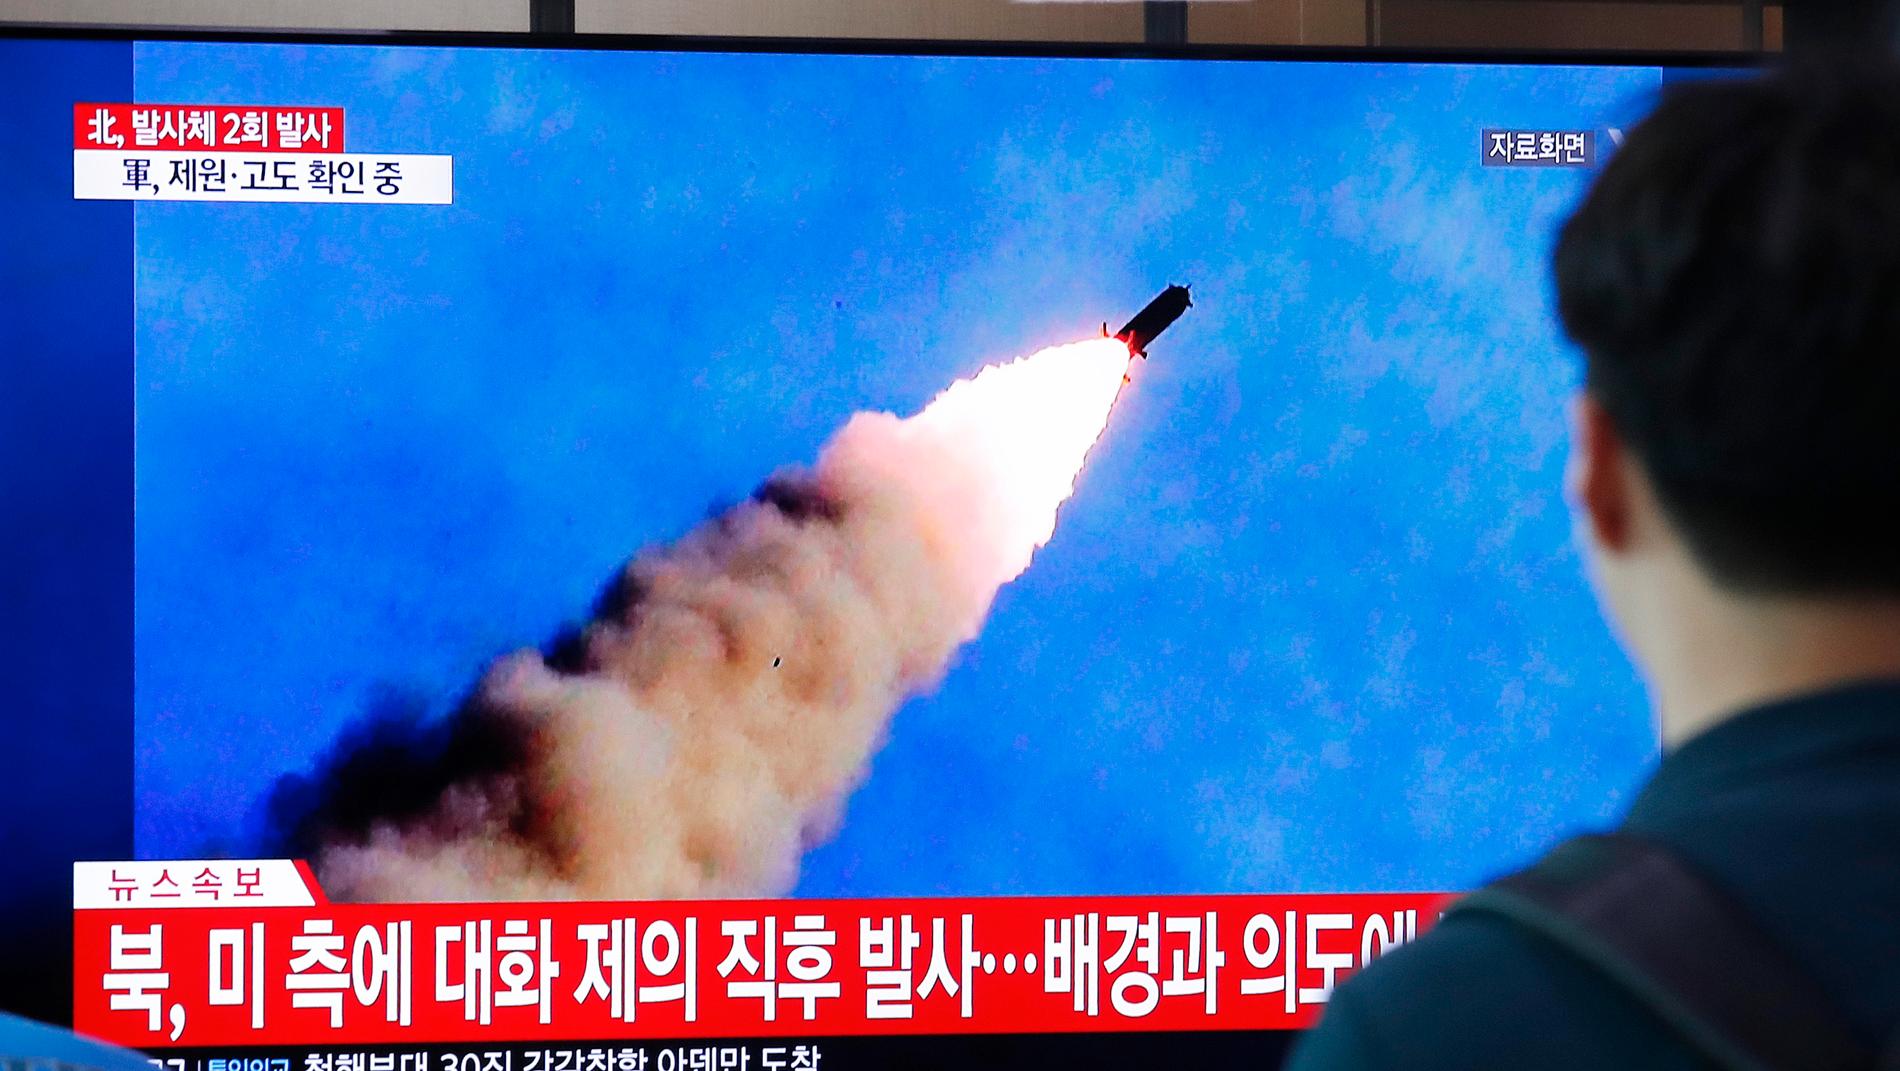 På sydkoreansk tv såg man robotarna som Nodkorea avfyrade.